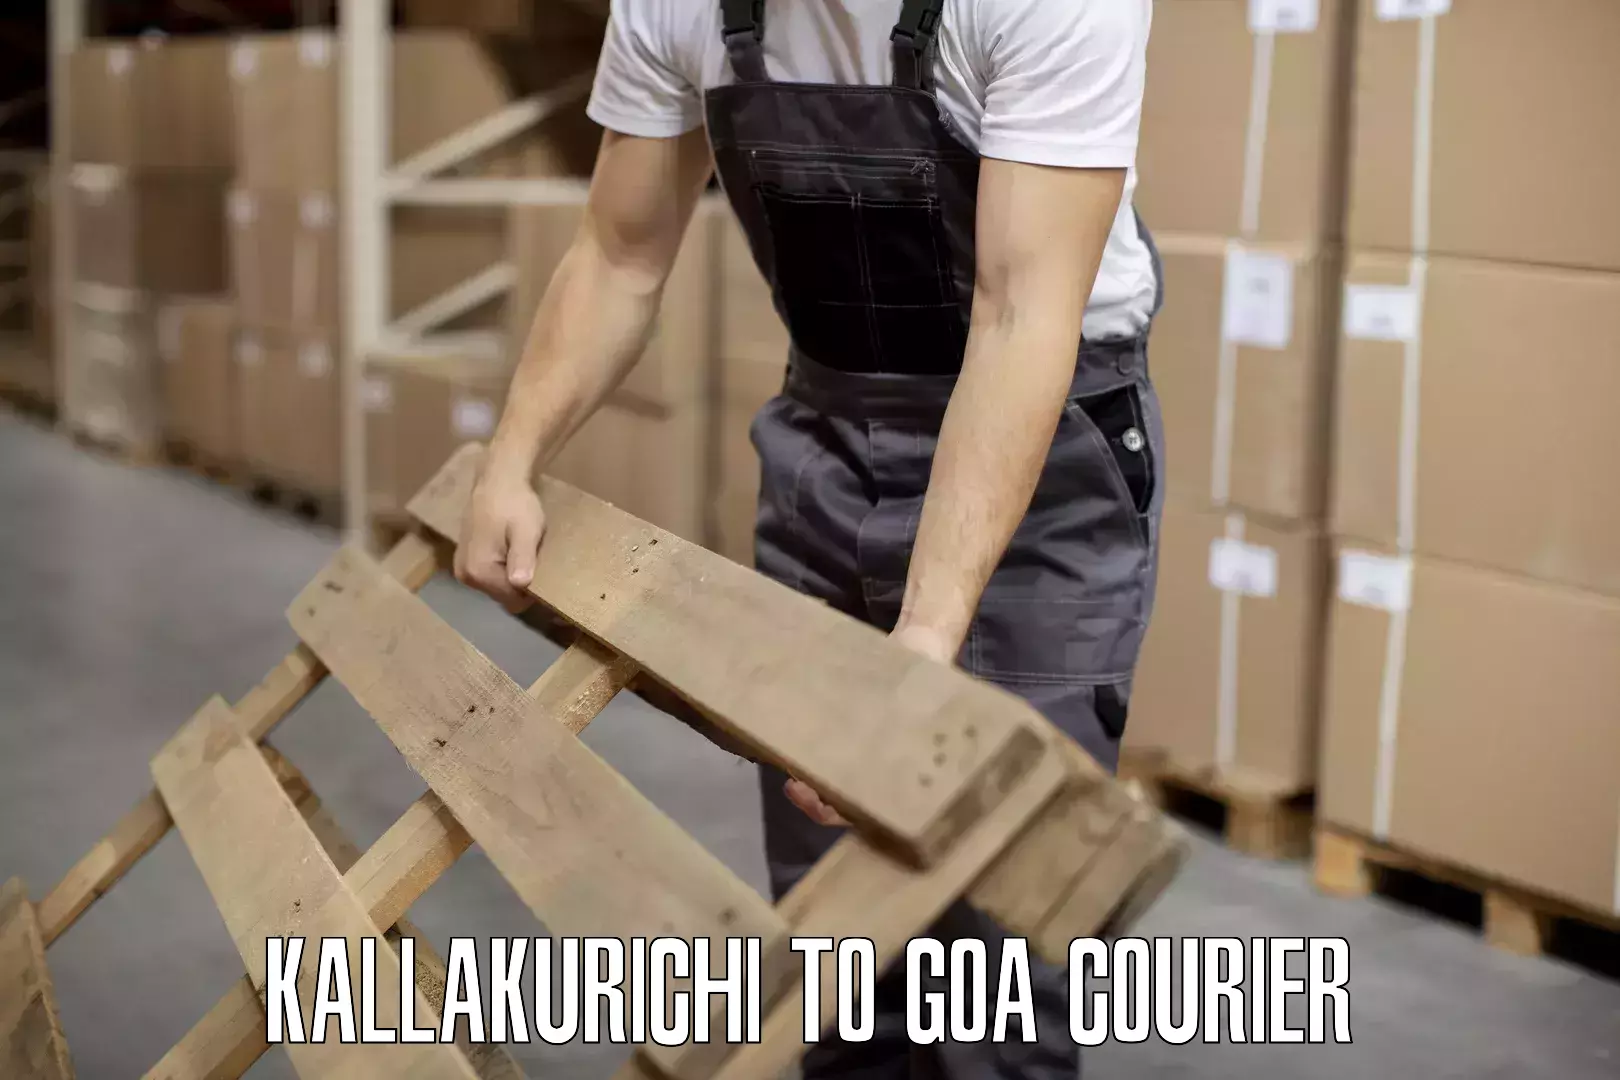 Luggage courier logistics Kallakurichi to Goa